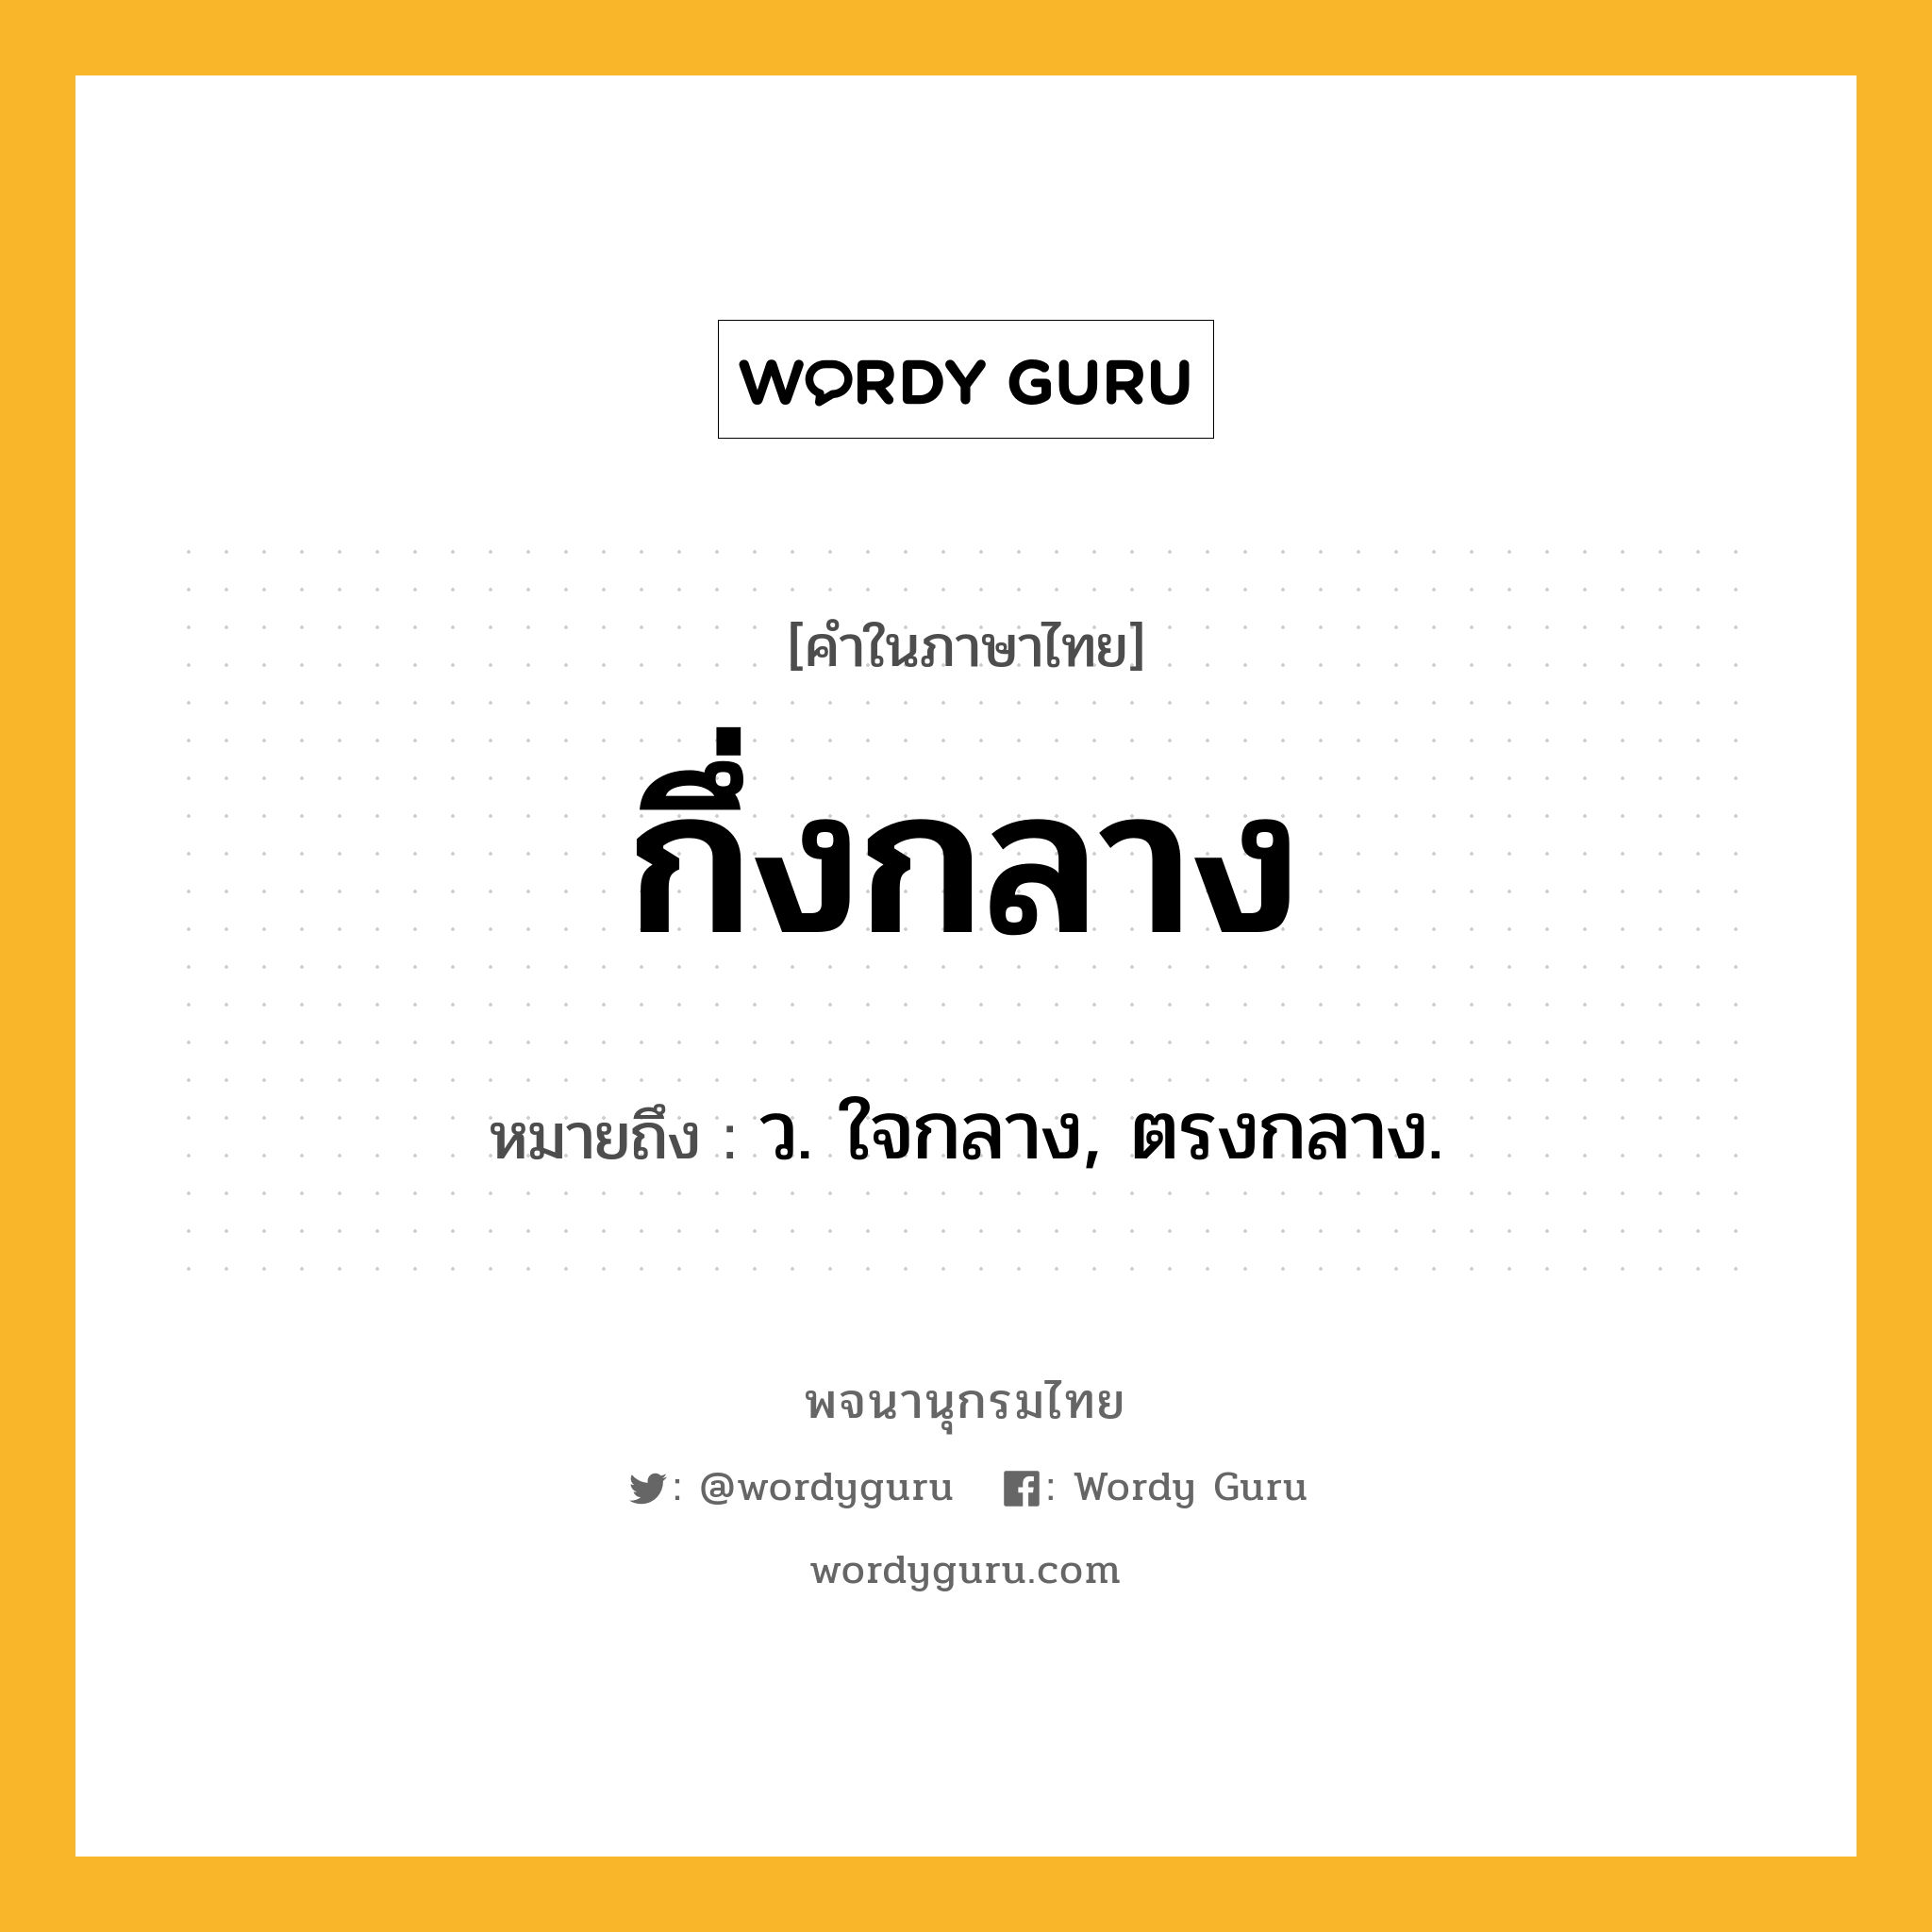 กึ่งกลาง หมายถึงอะไร?, คำในภาษาไทย กึ่งกลาง หมายถึง ว. ใจกลาง, ตรงกลาง.